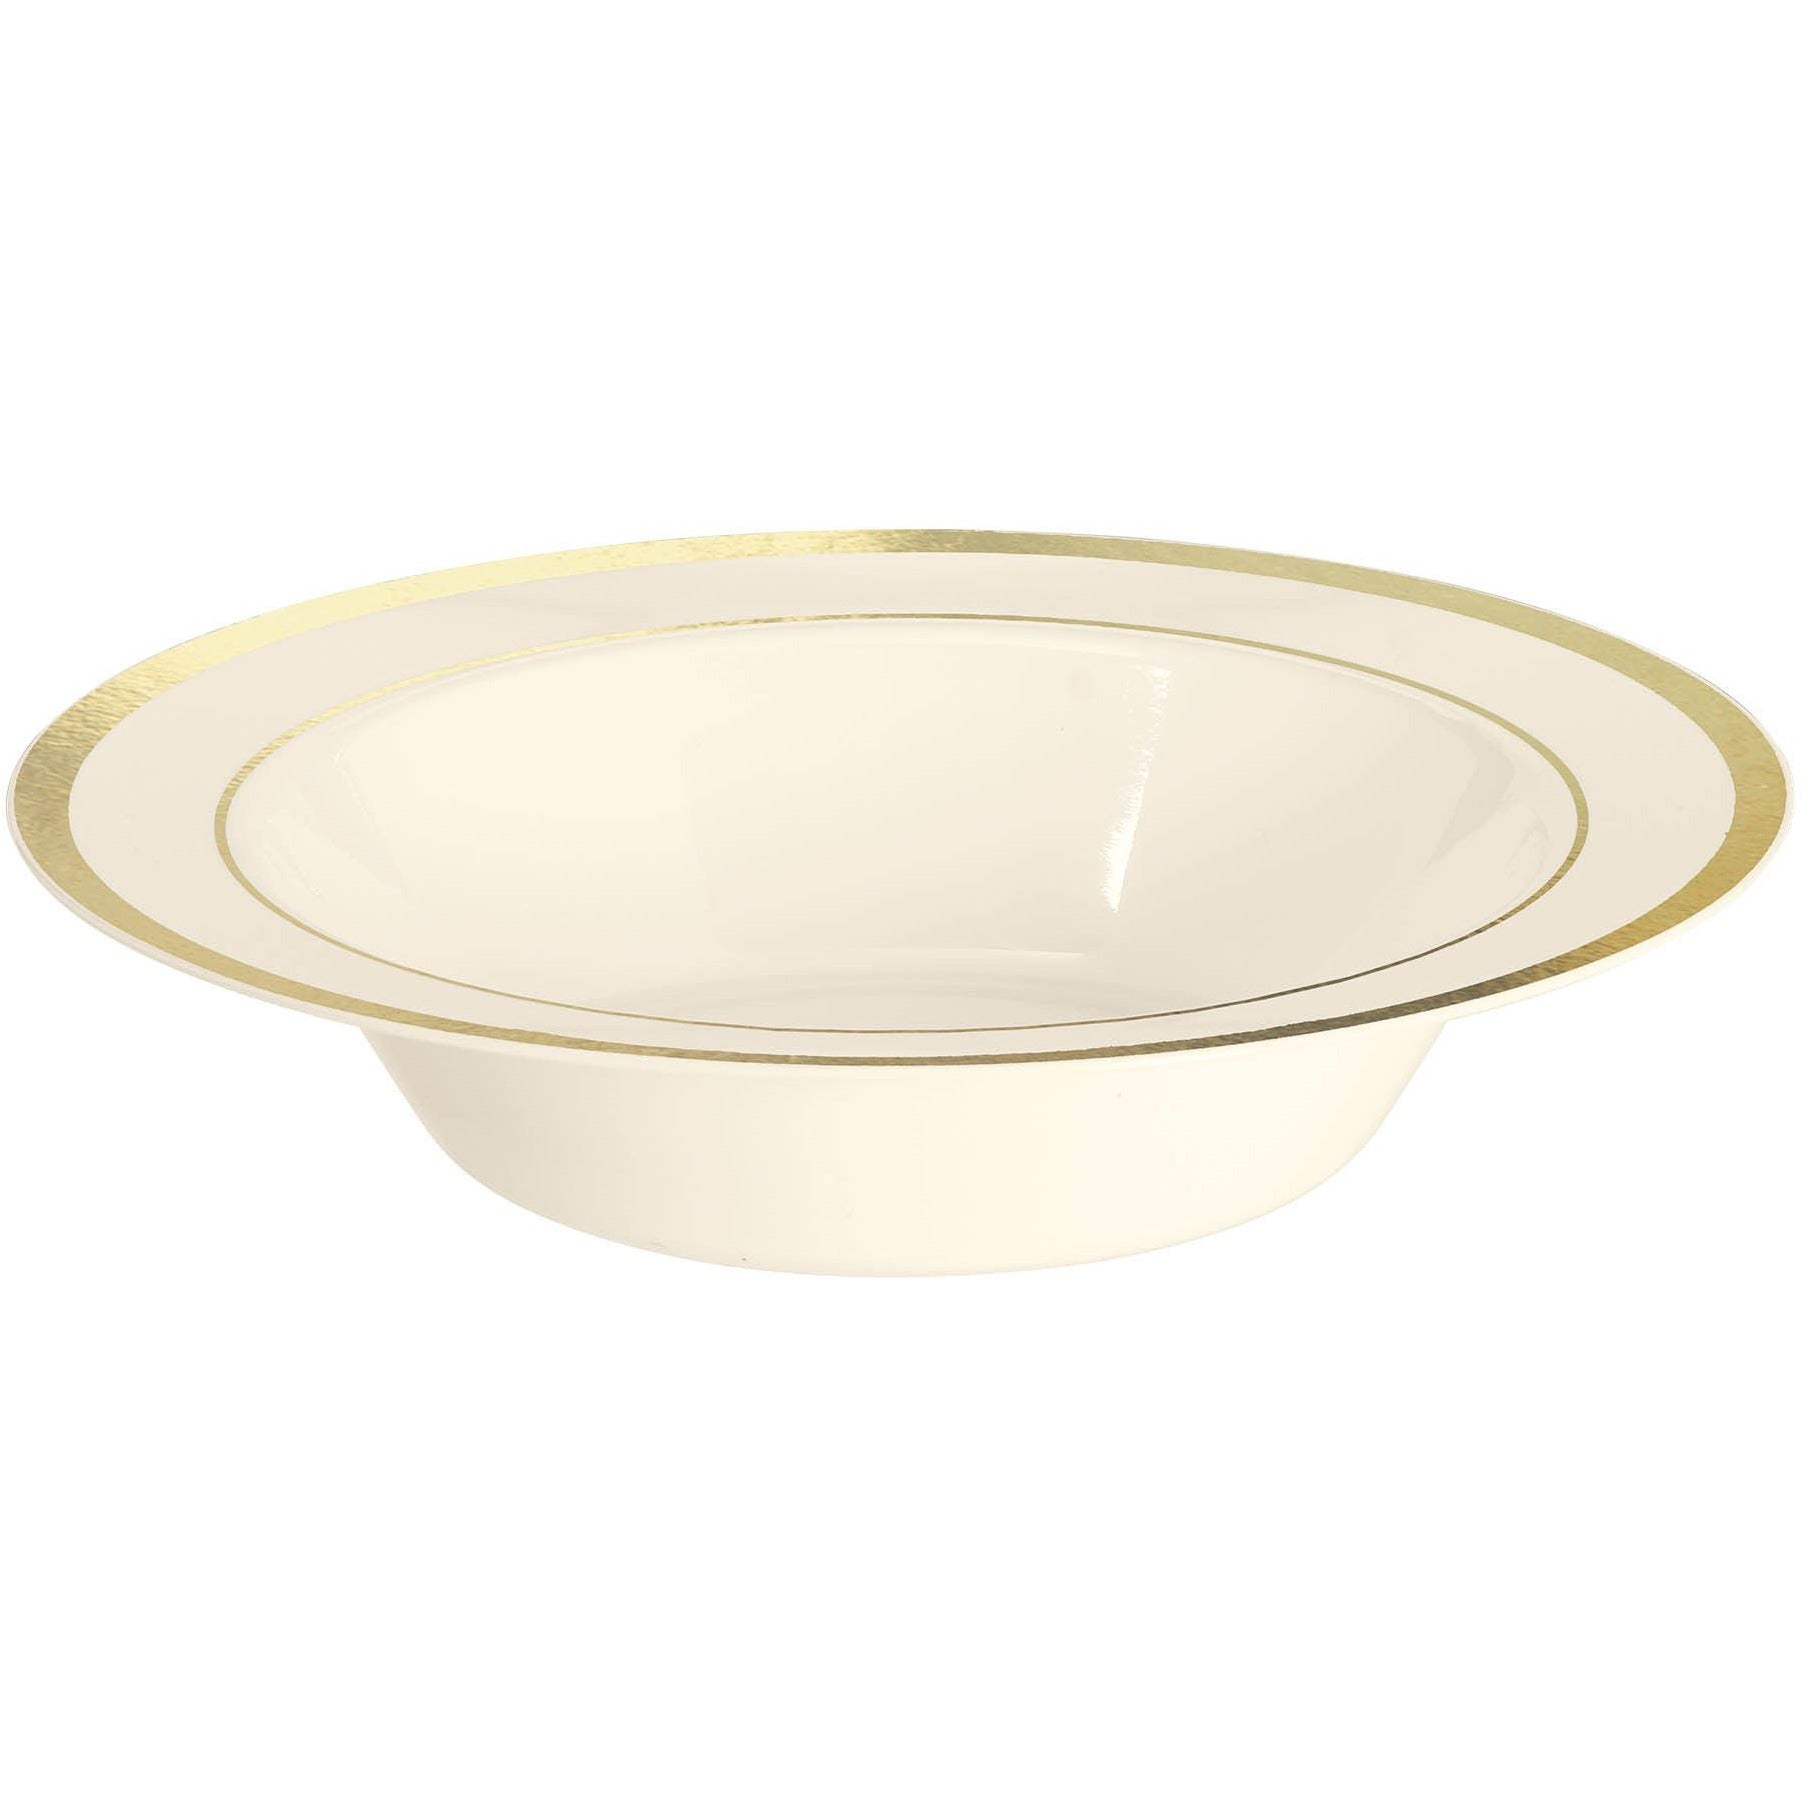 Amscan BASIC Cream Premium Plastic Bowls with Gold Trim, 12 oz.